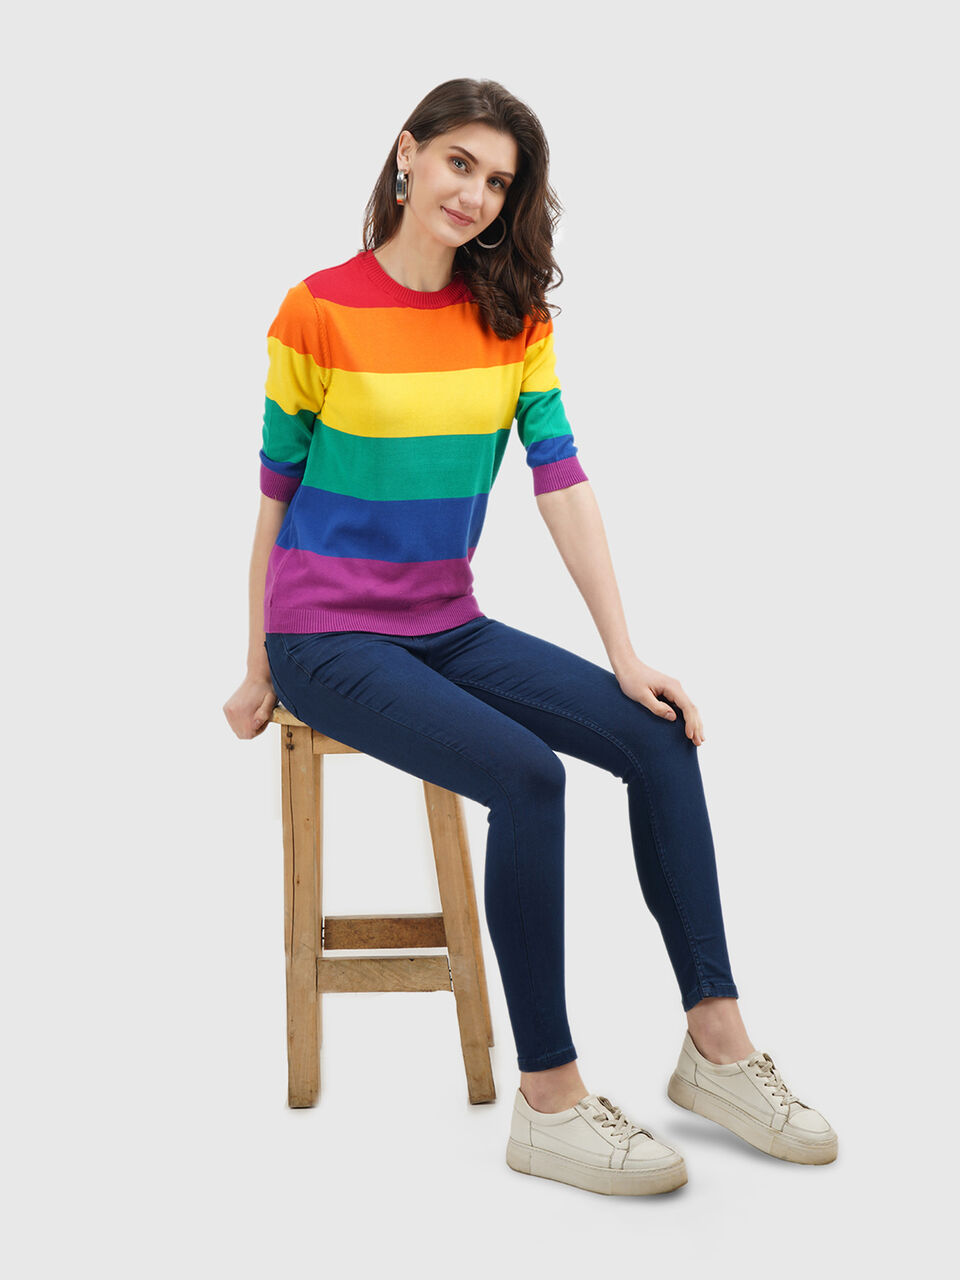 Rainbow Stripe Sweater - Multi-color